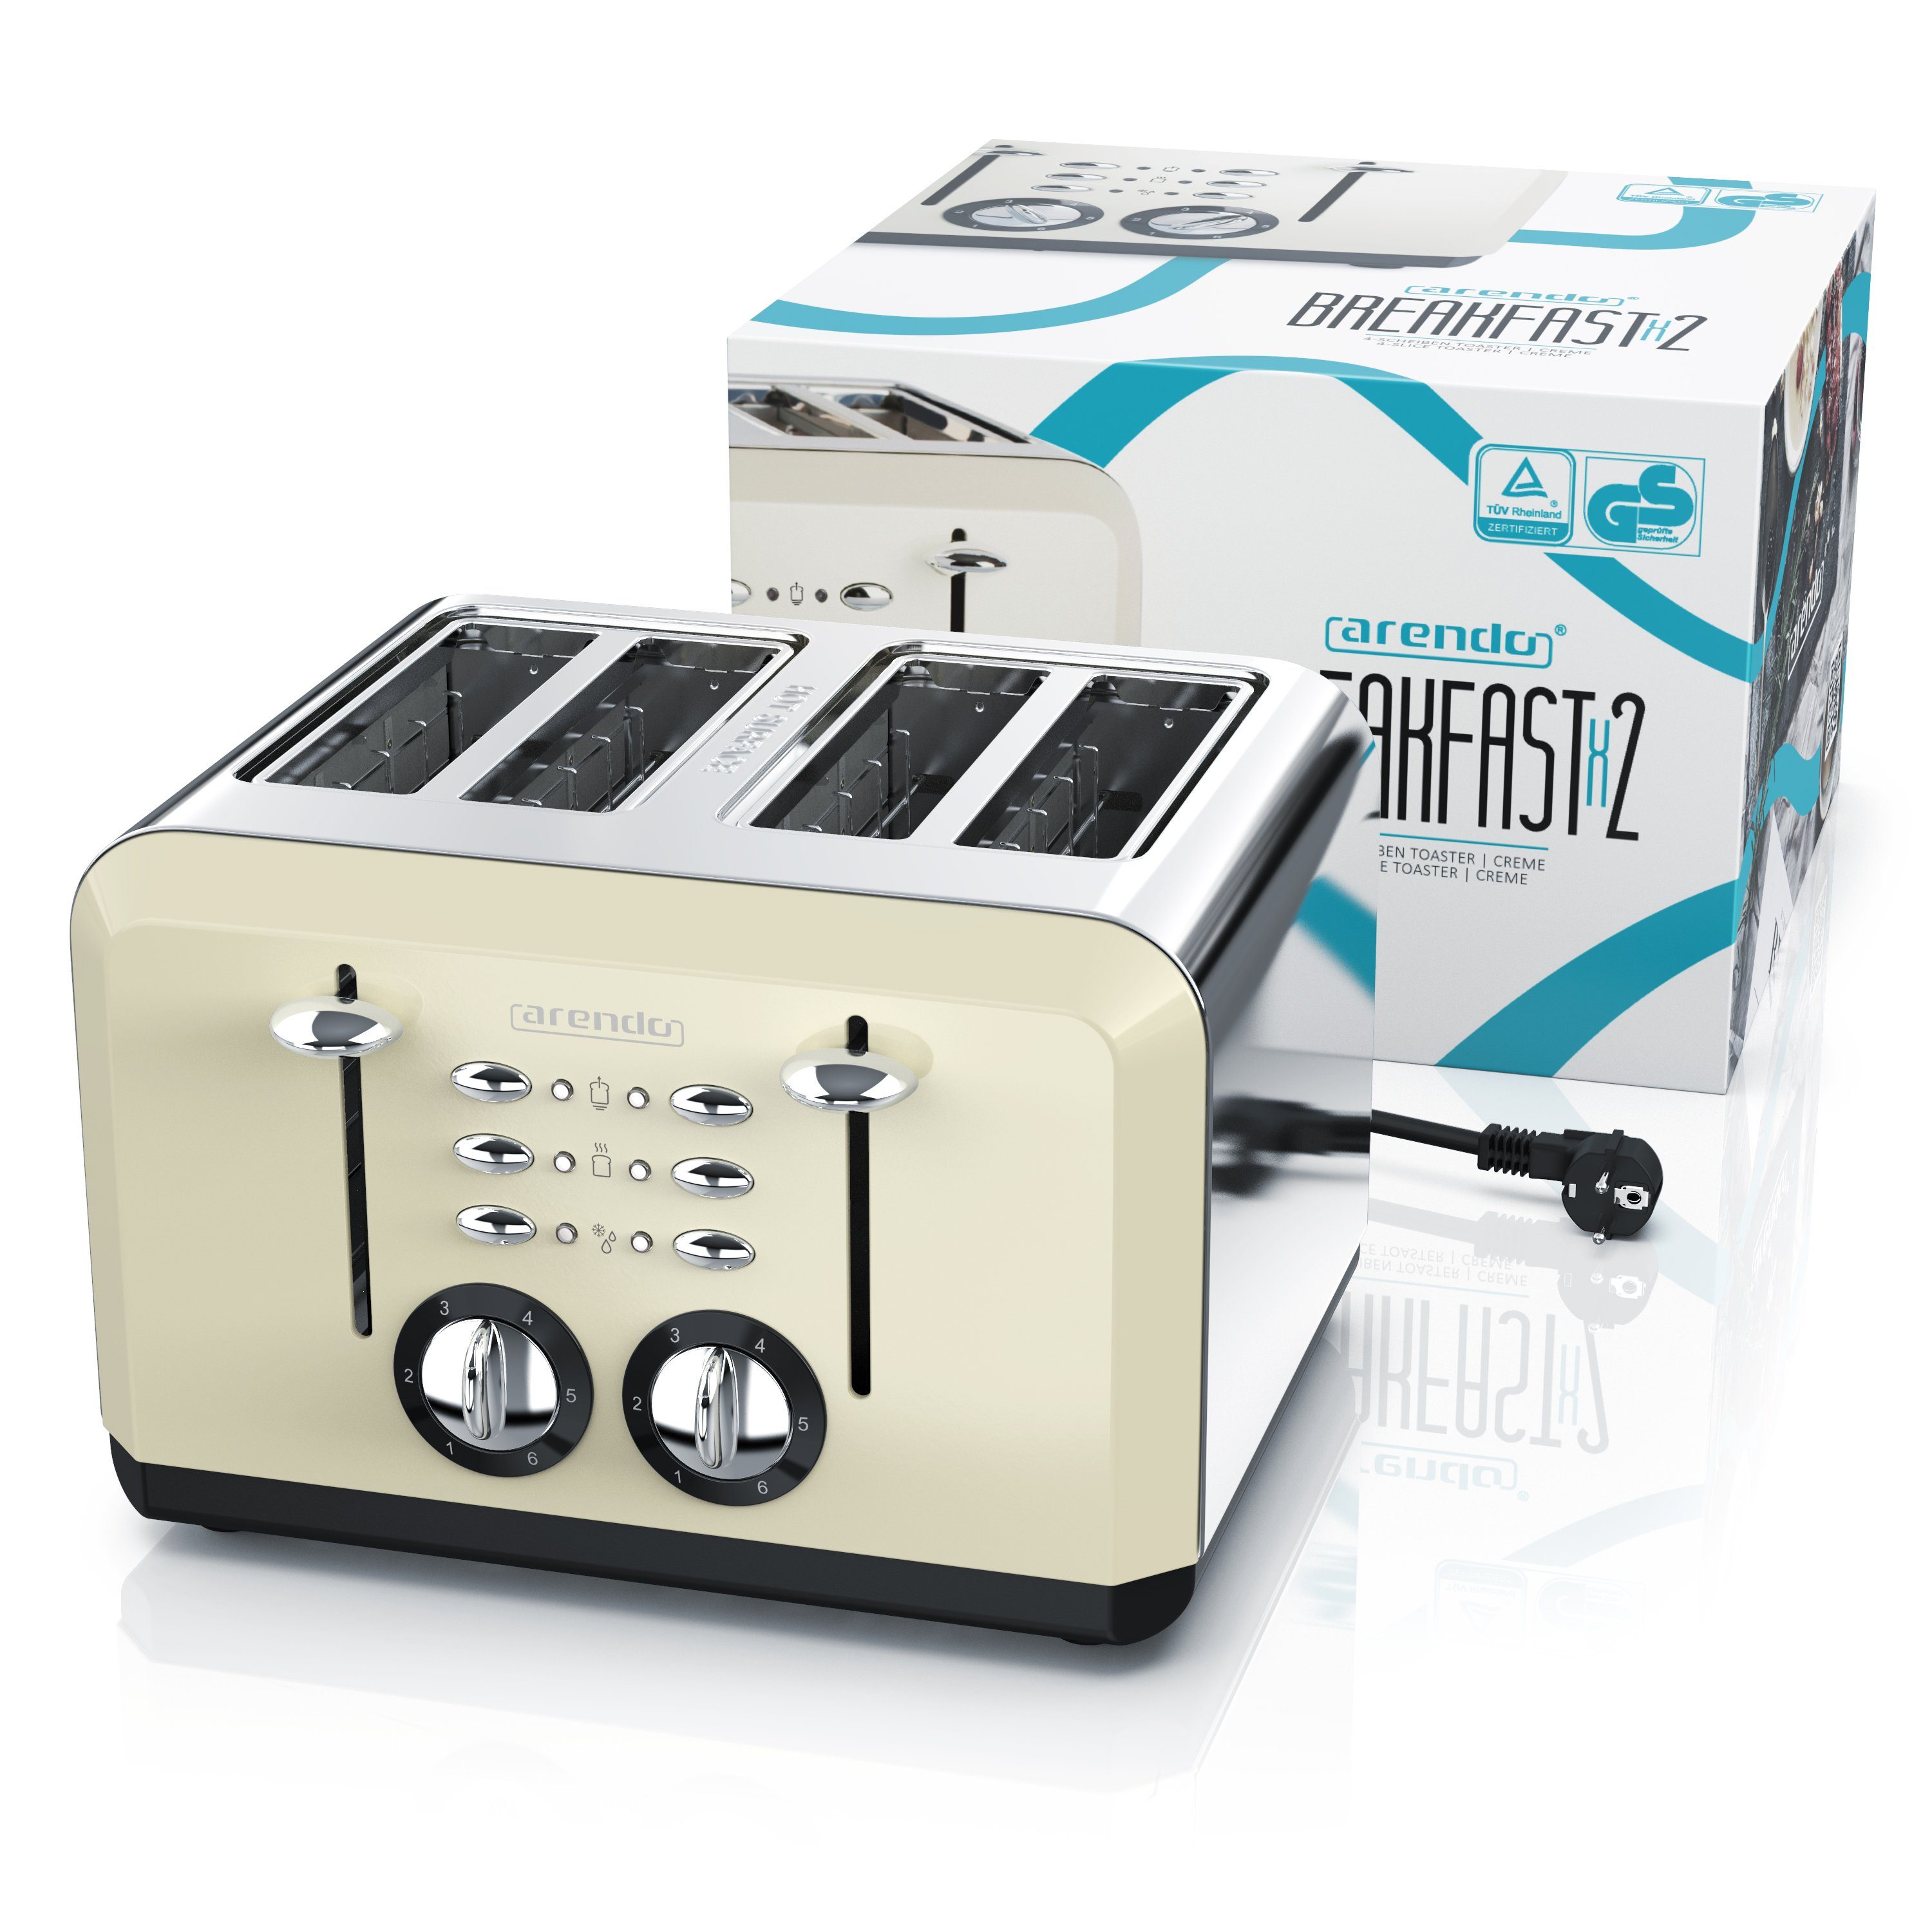 Doppelwandgehäuse für Wärmeisolierendes beige Toaster, W, Edelstahl, 4 Schlitze, kurze Automatik, Scheiben, 1630 4 Arendo